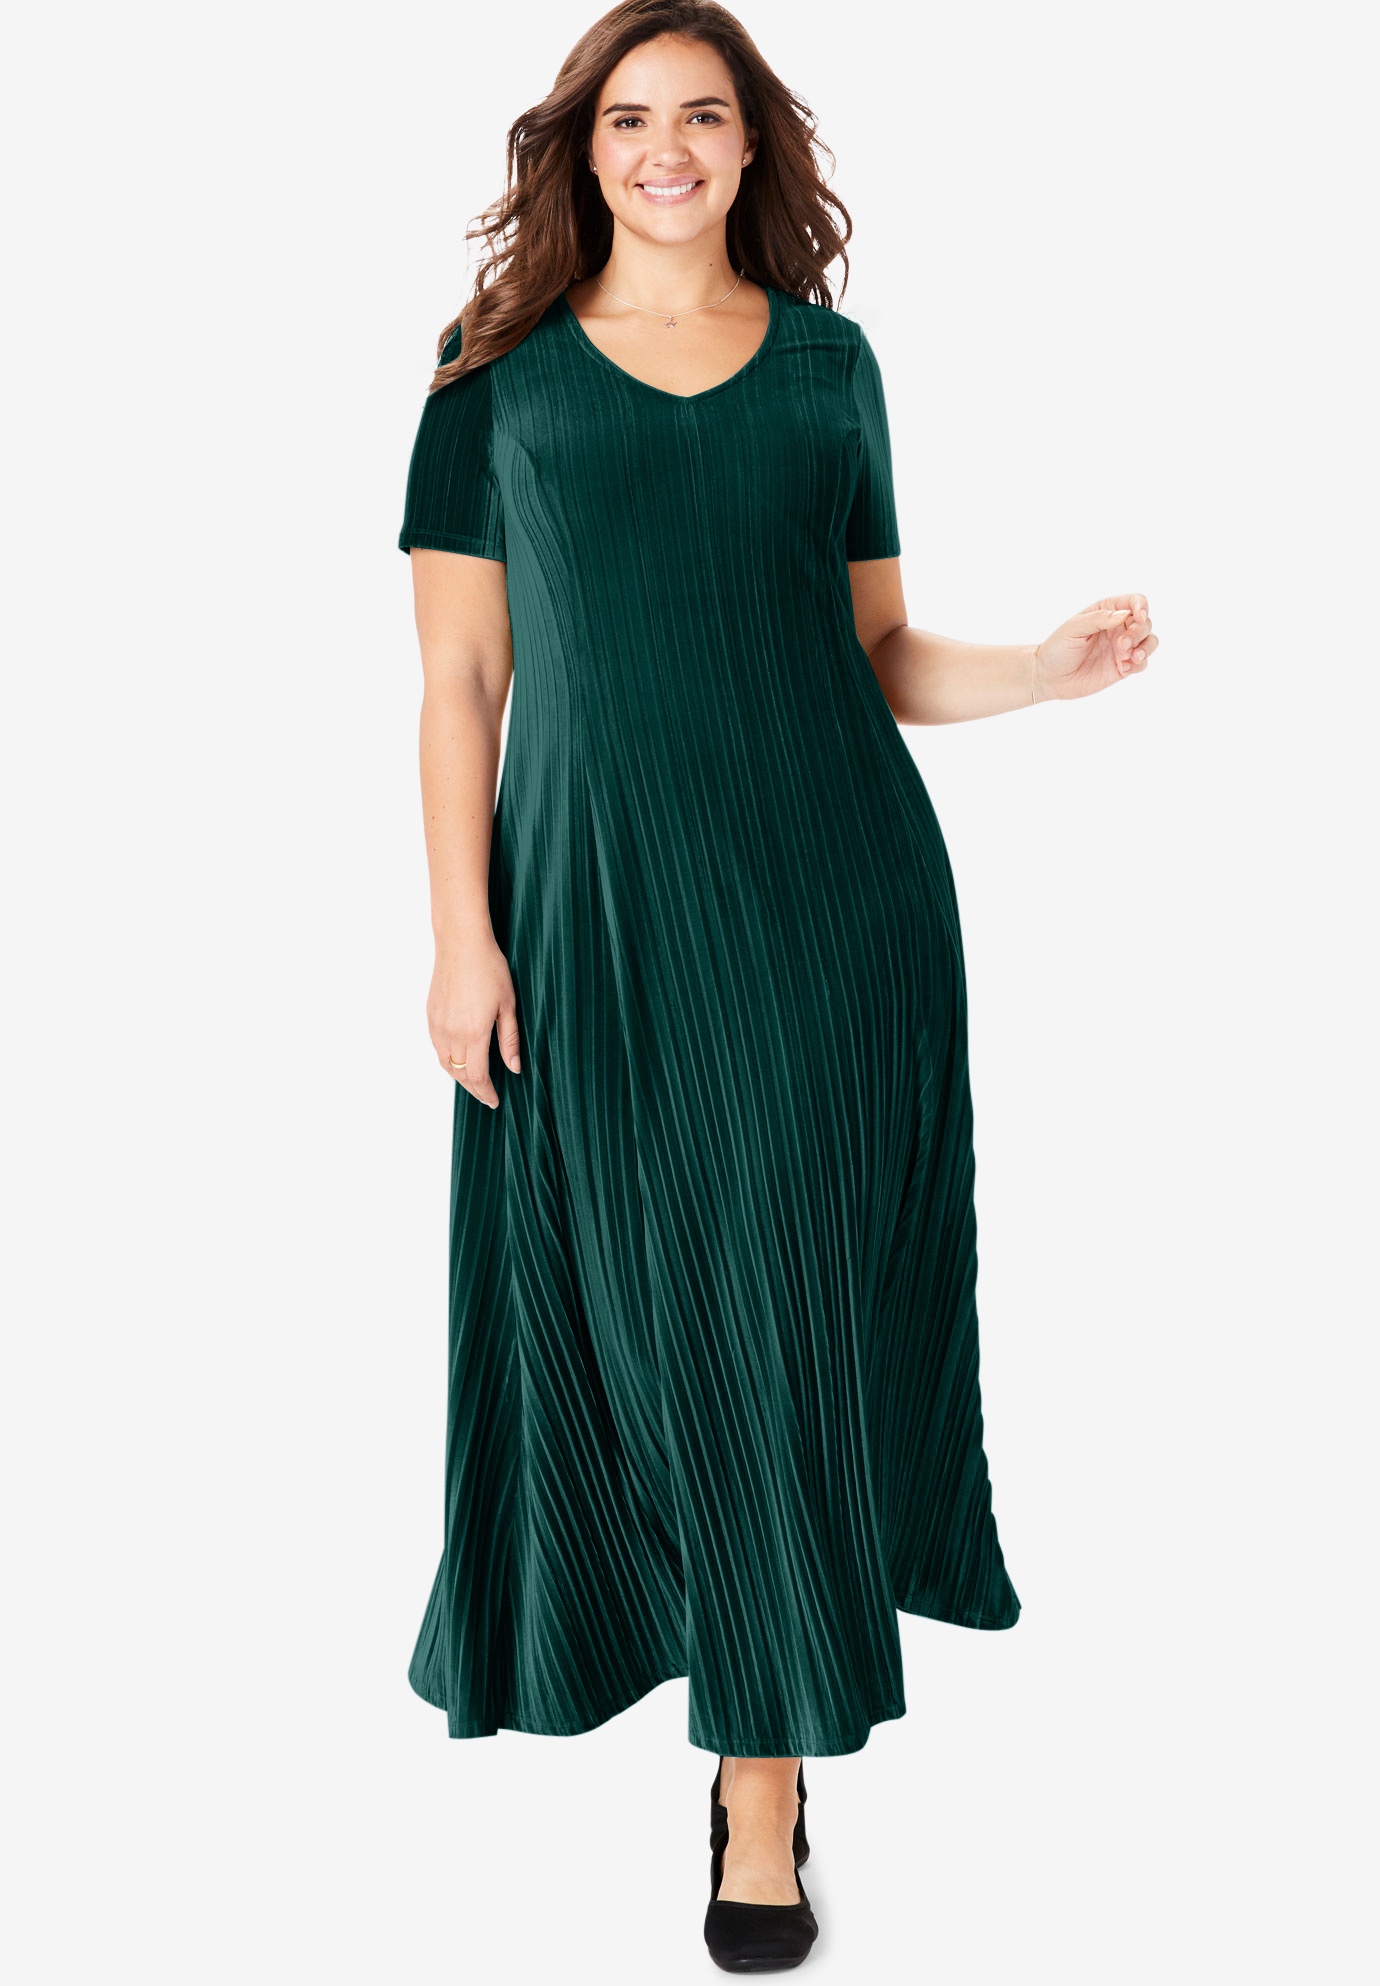 green velour dress